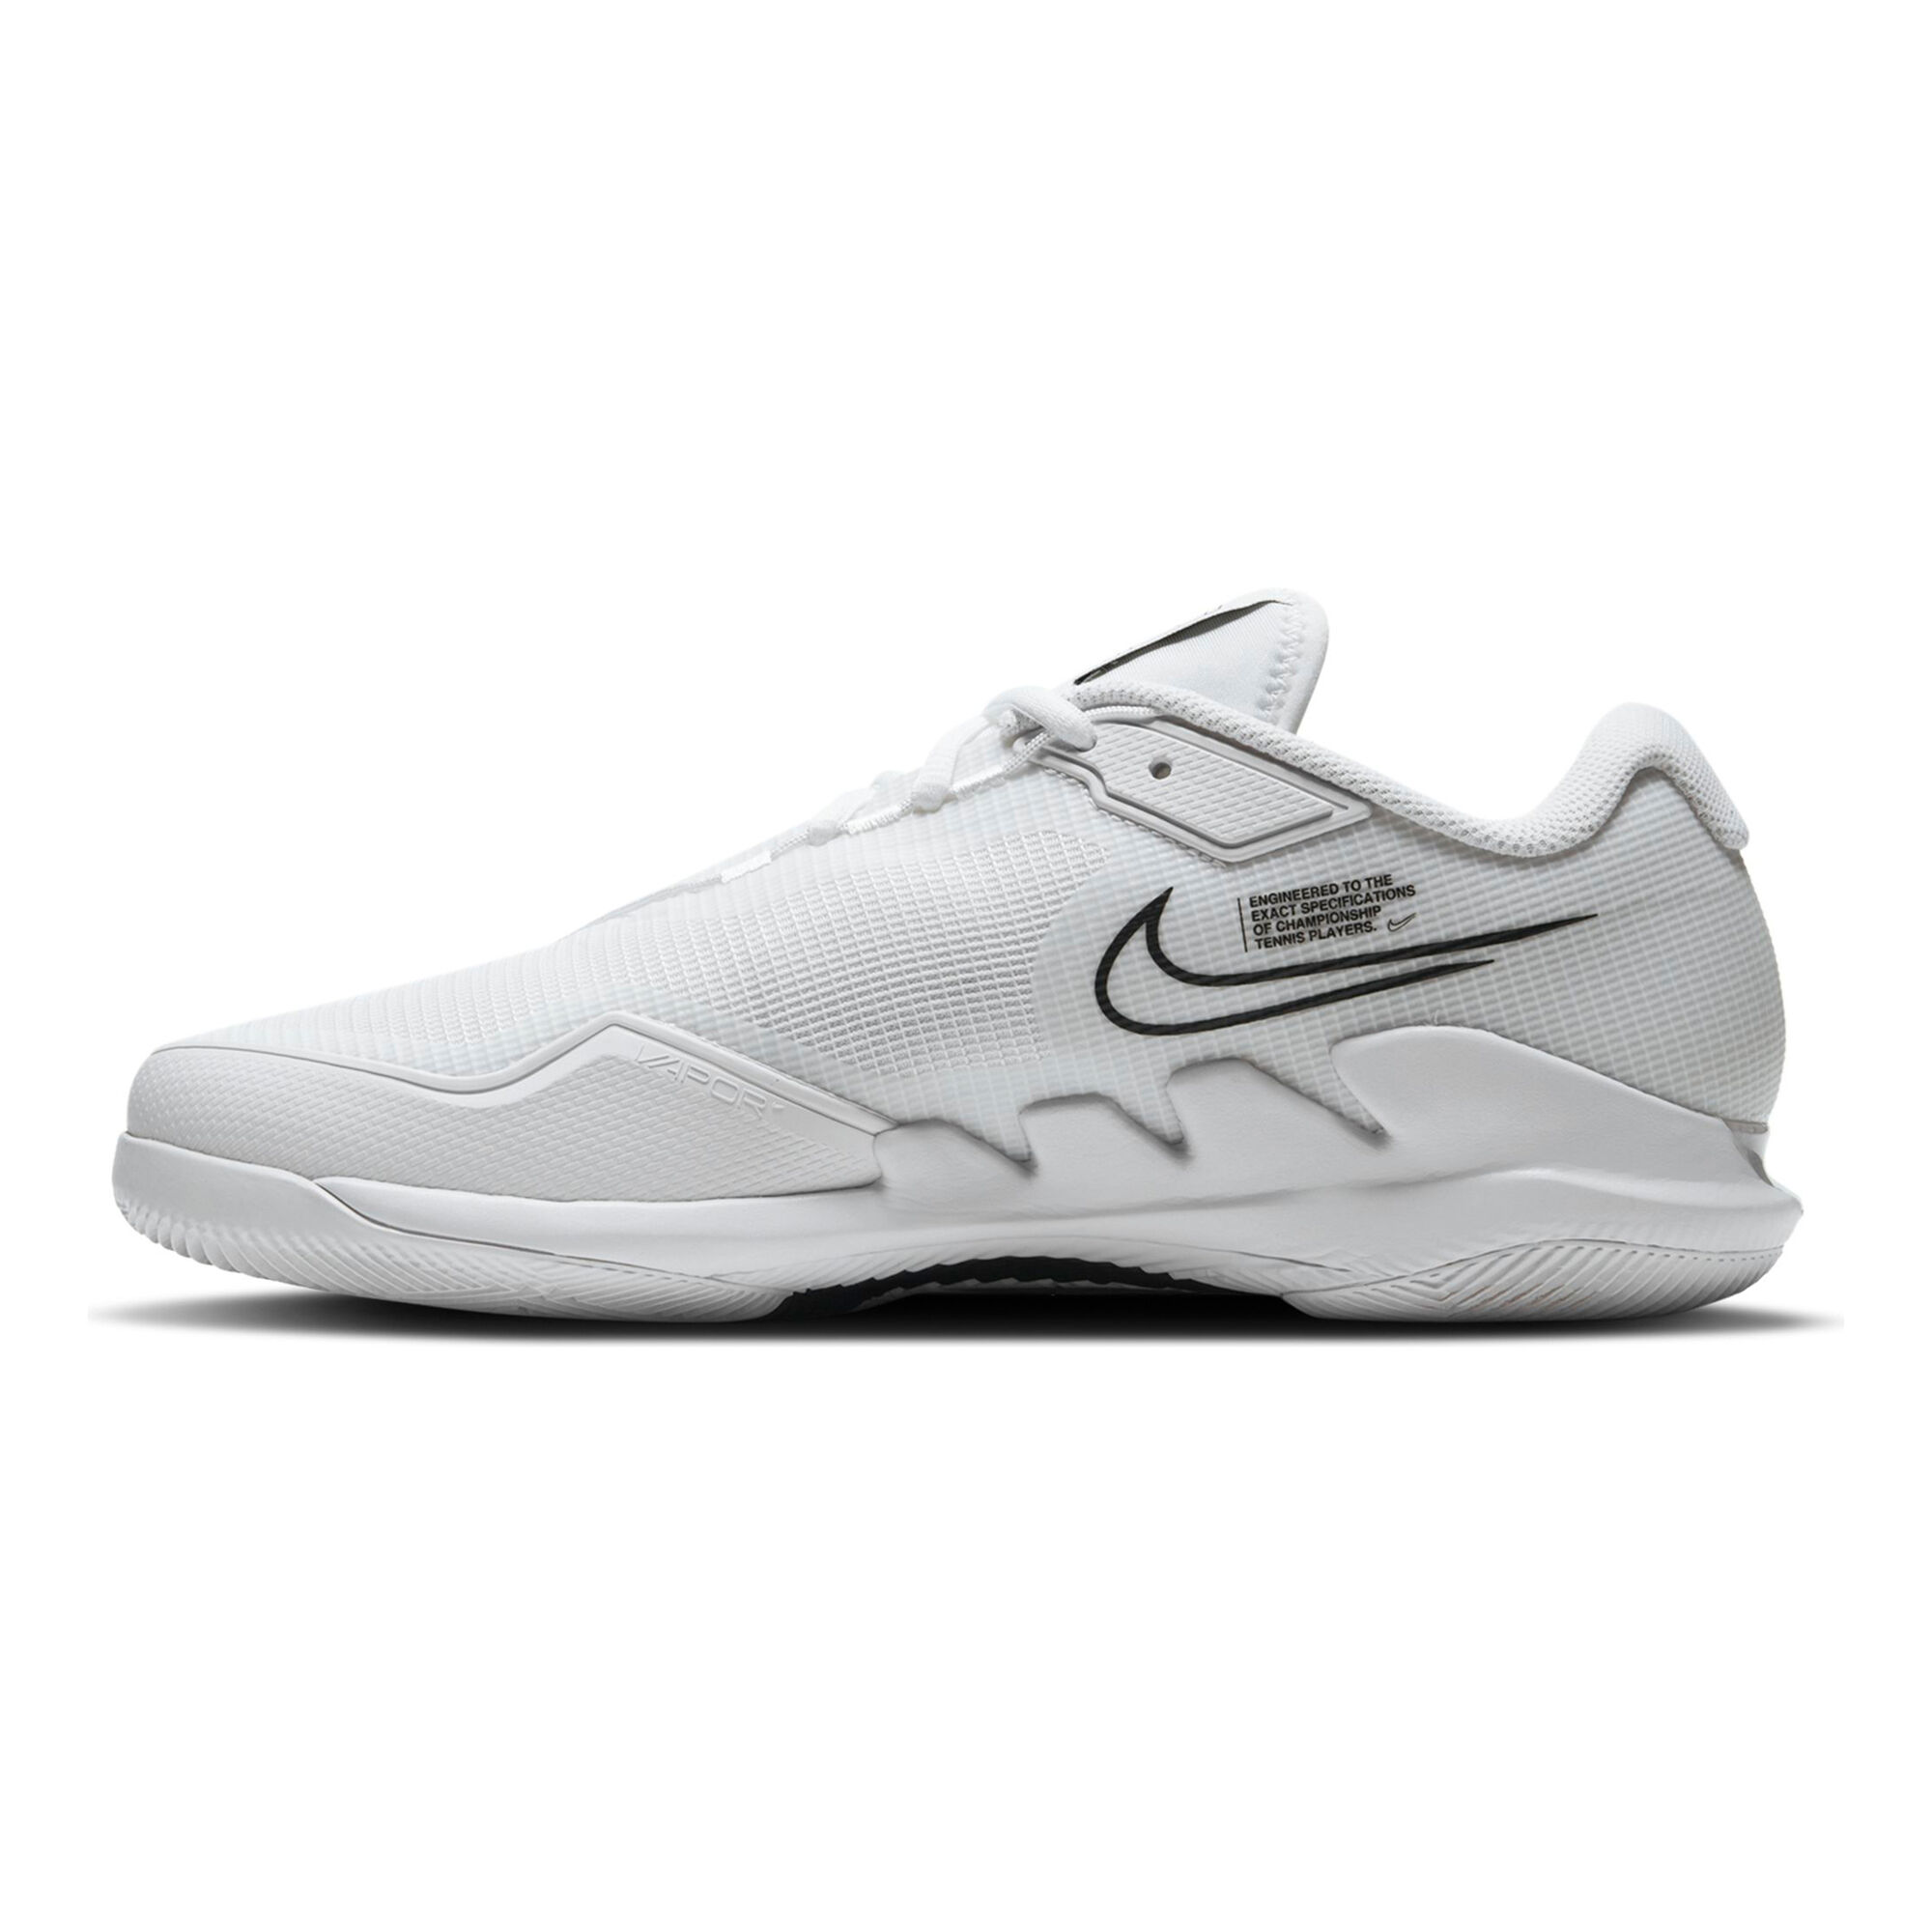 Buy Nike Air Zoom Vapor Pro All Court Shoe Men White, Black online